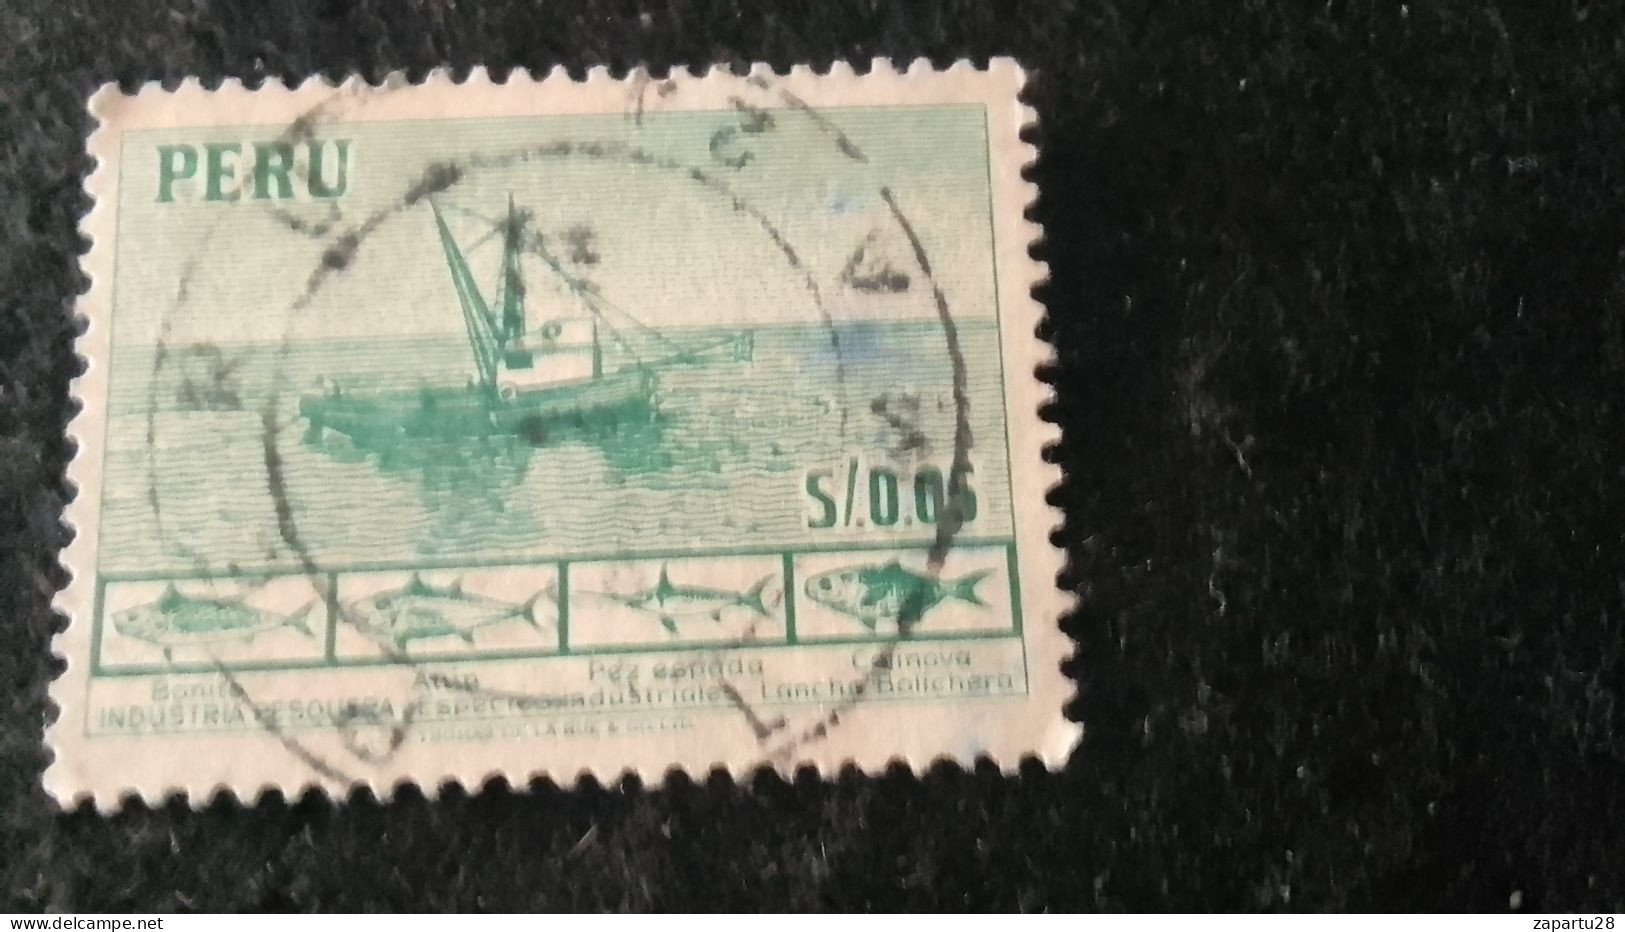 PERU- 1930-50--     S/005     DAMGALI - Peru